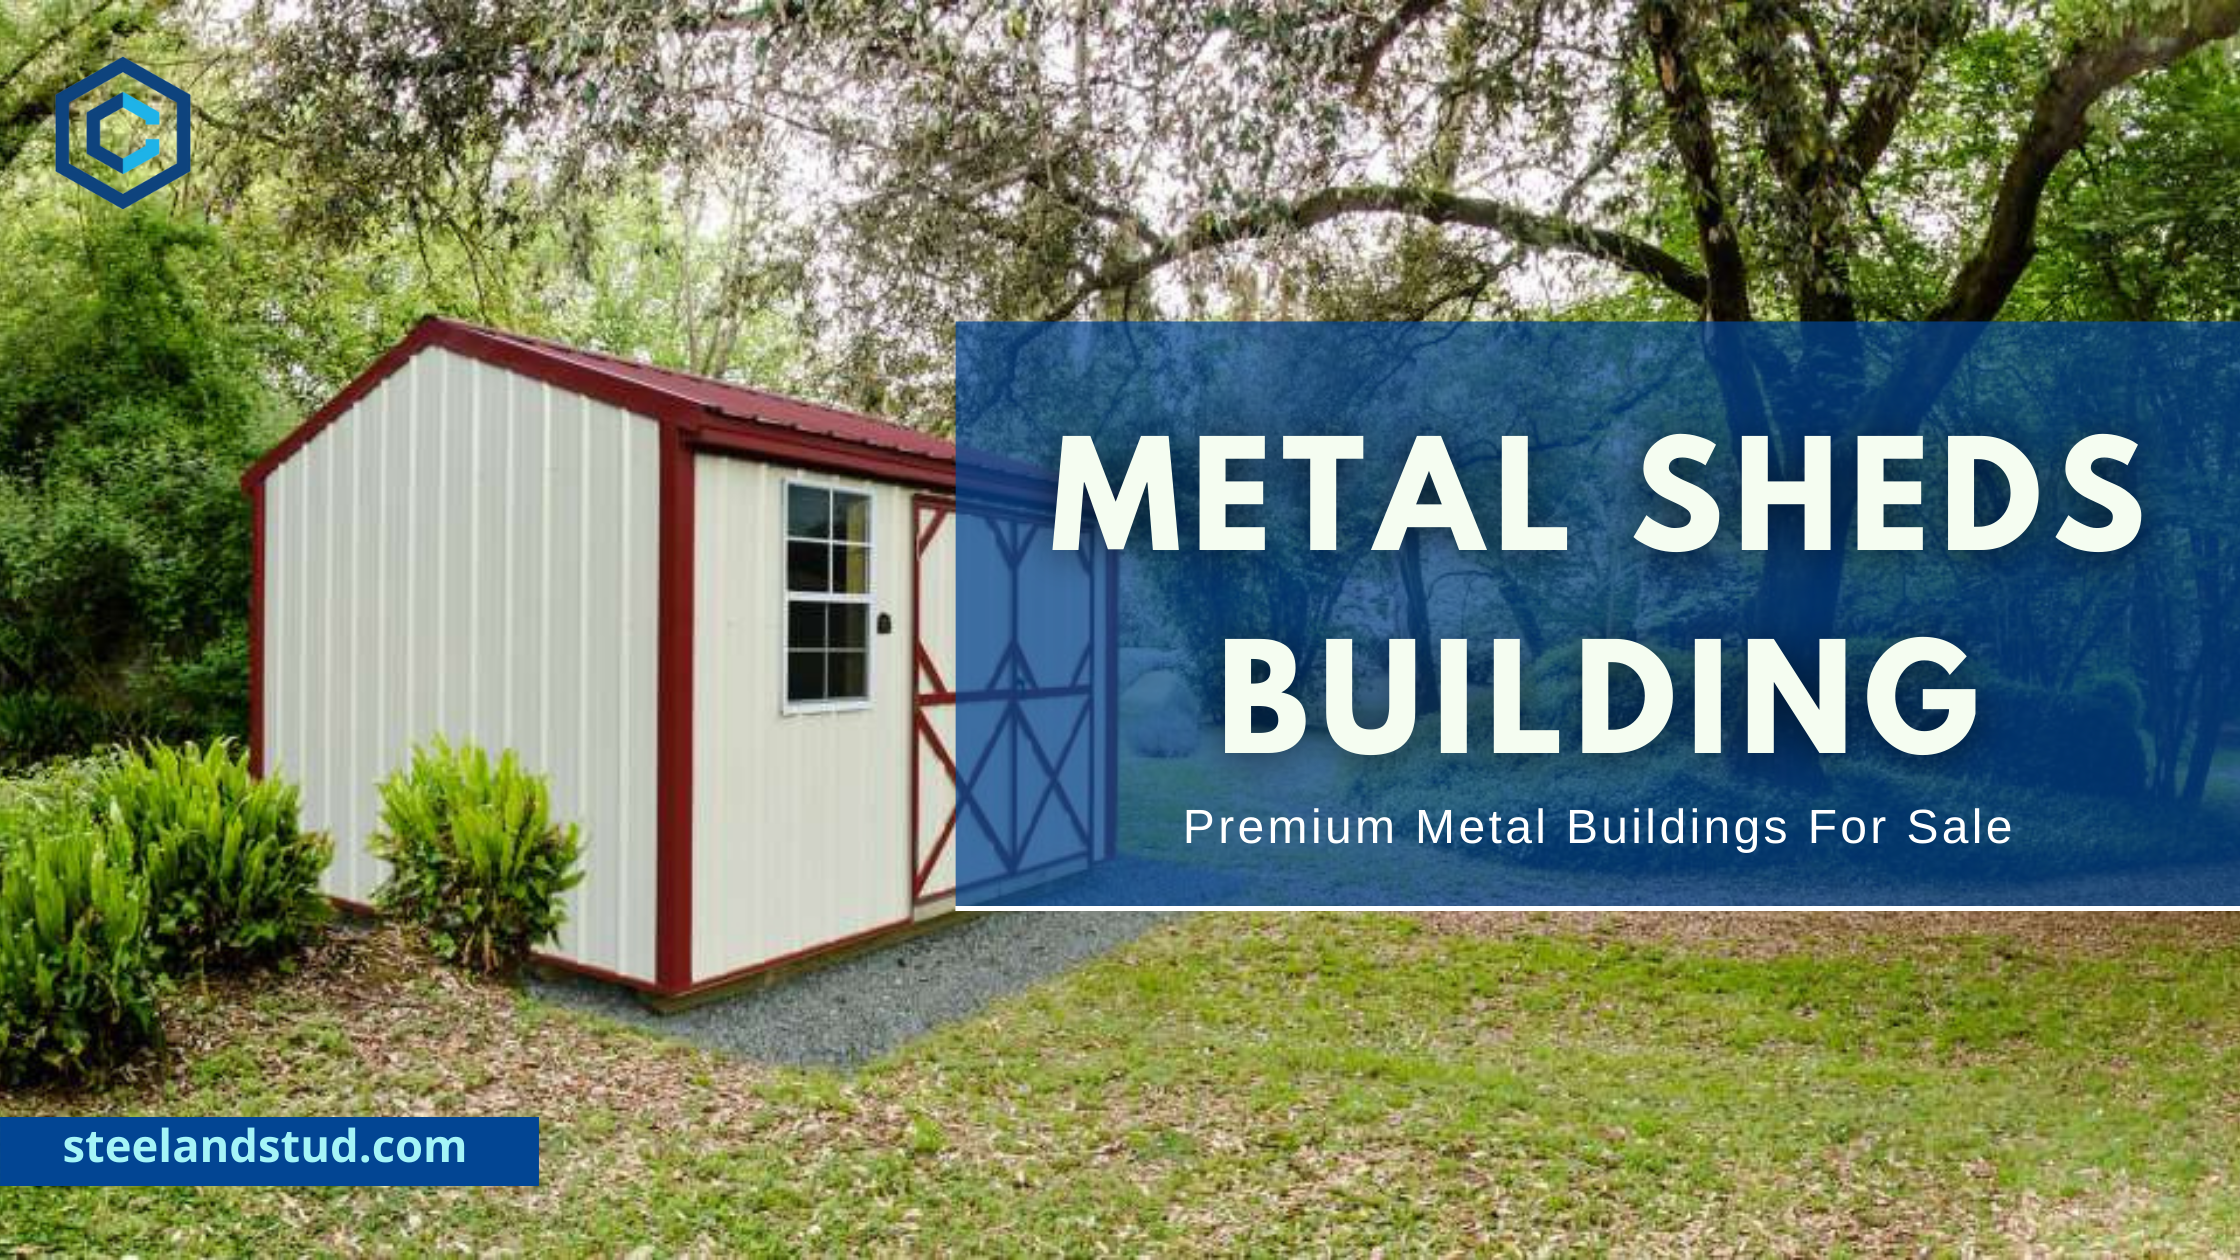 Metal sheds Building